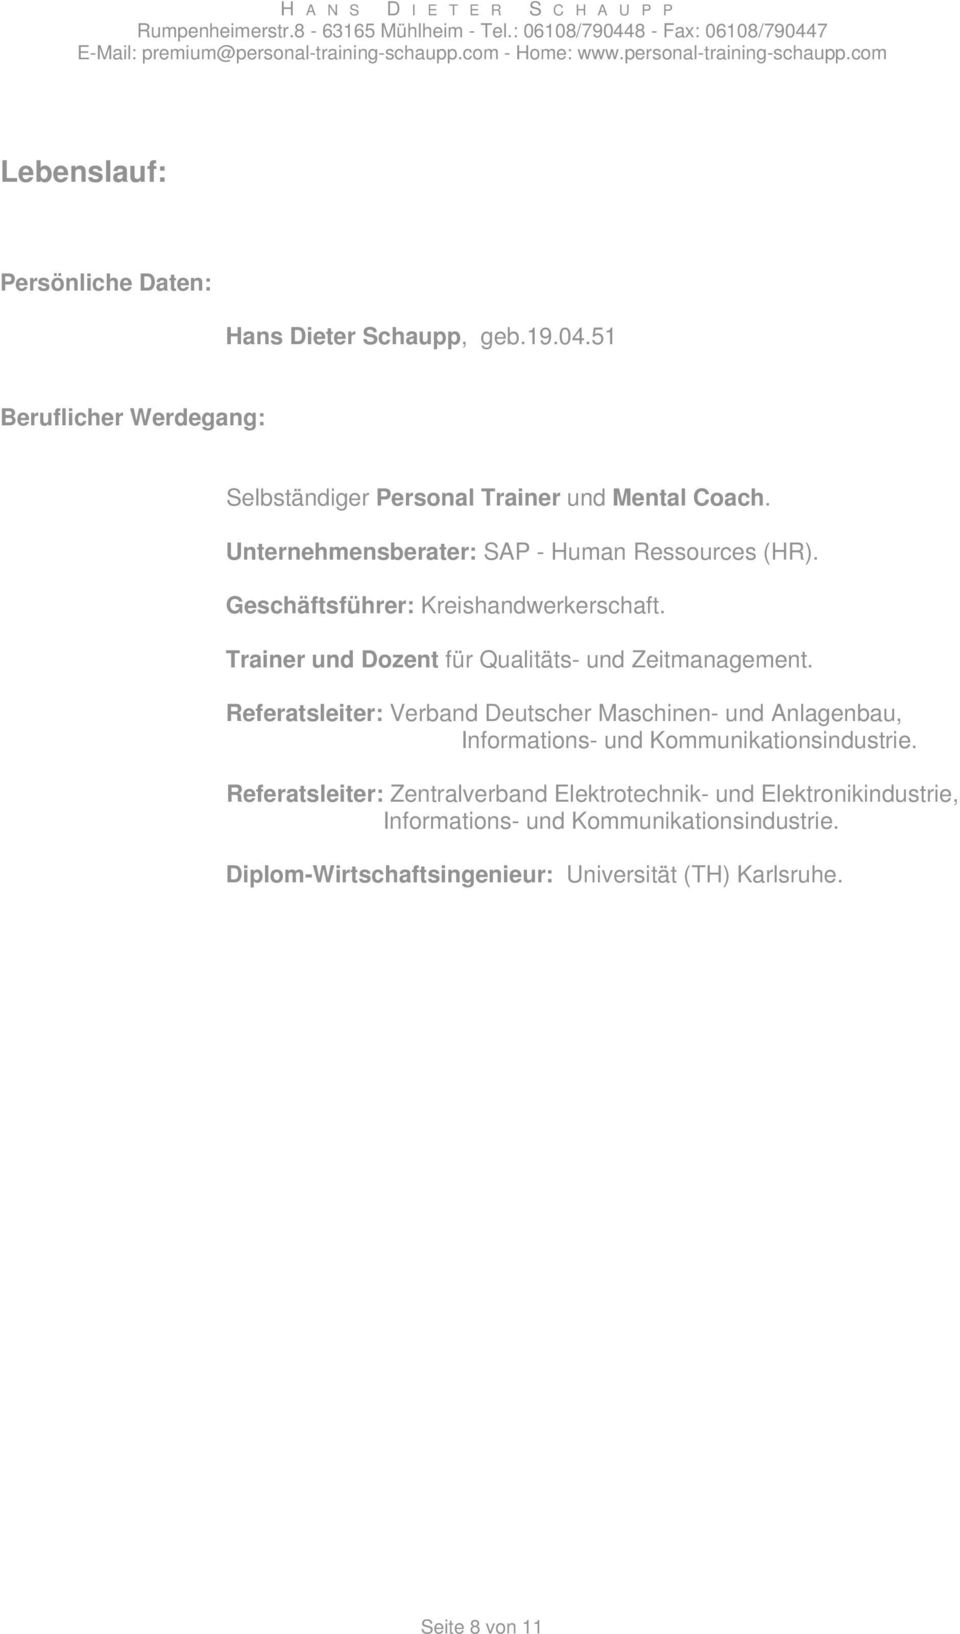 Referatsleiter: Verband Deutscher Maschinen- und Anlagenbau, Informations- und Kommunikationsindustrie.